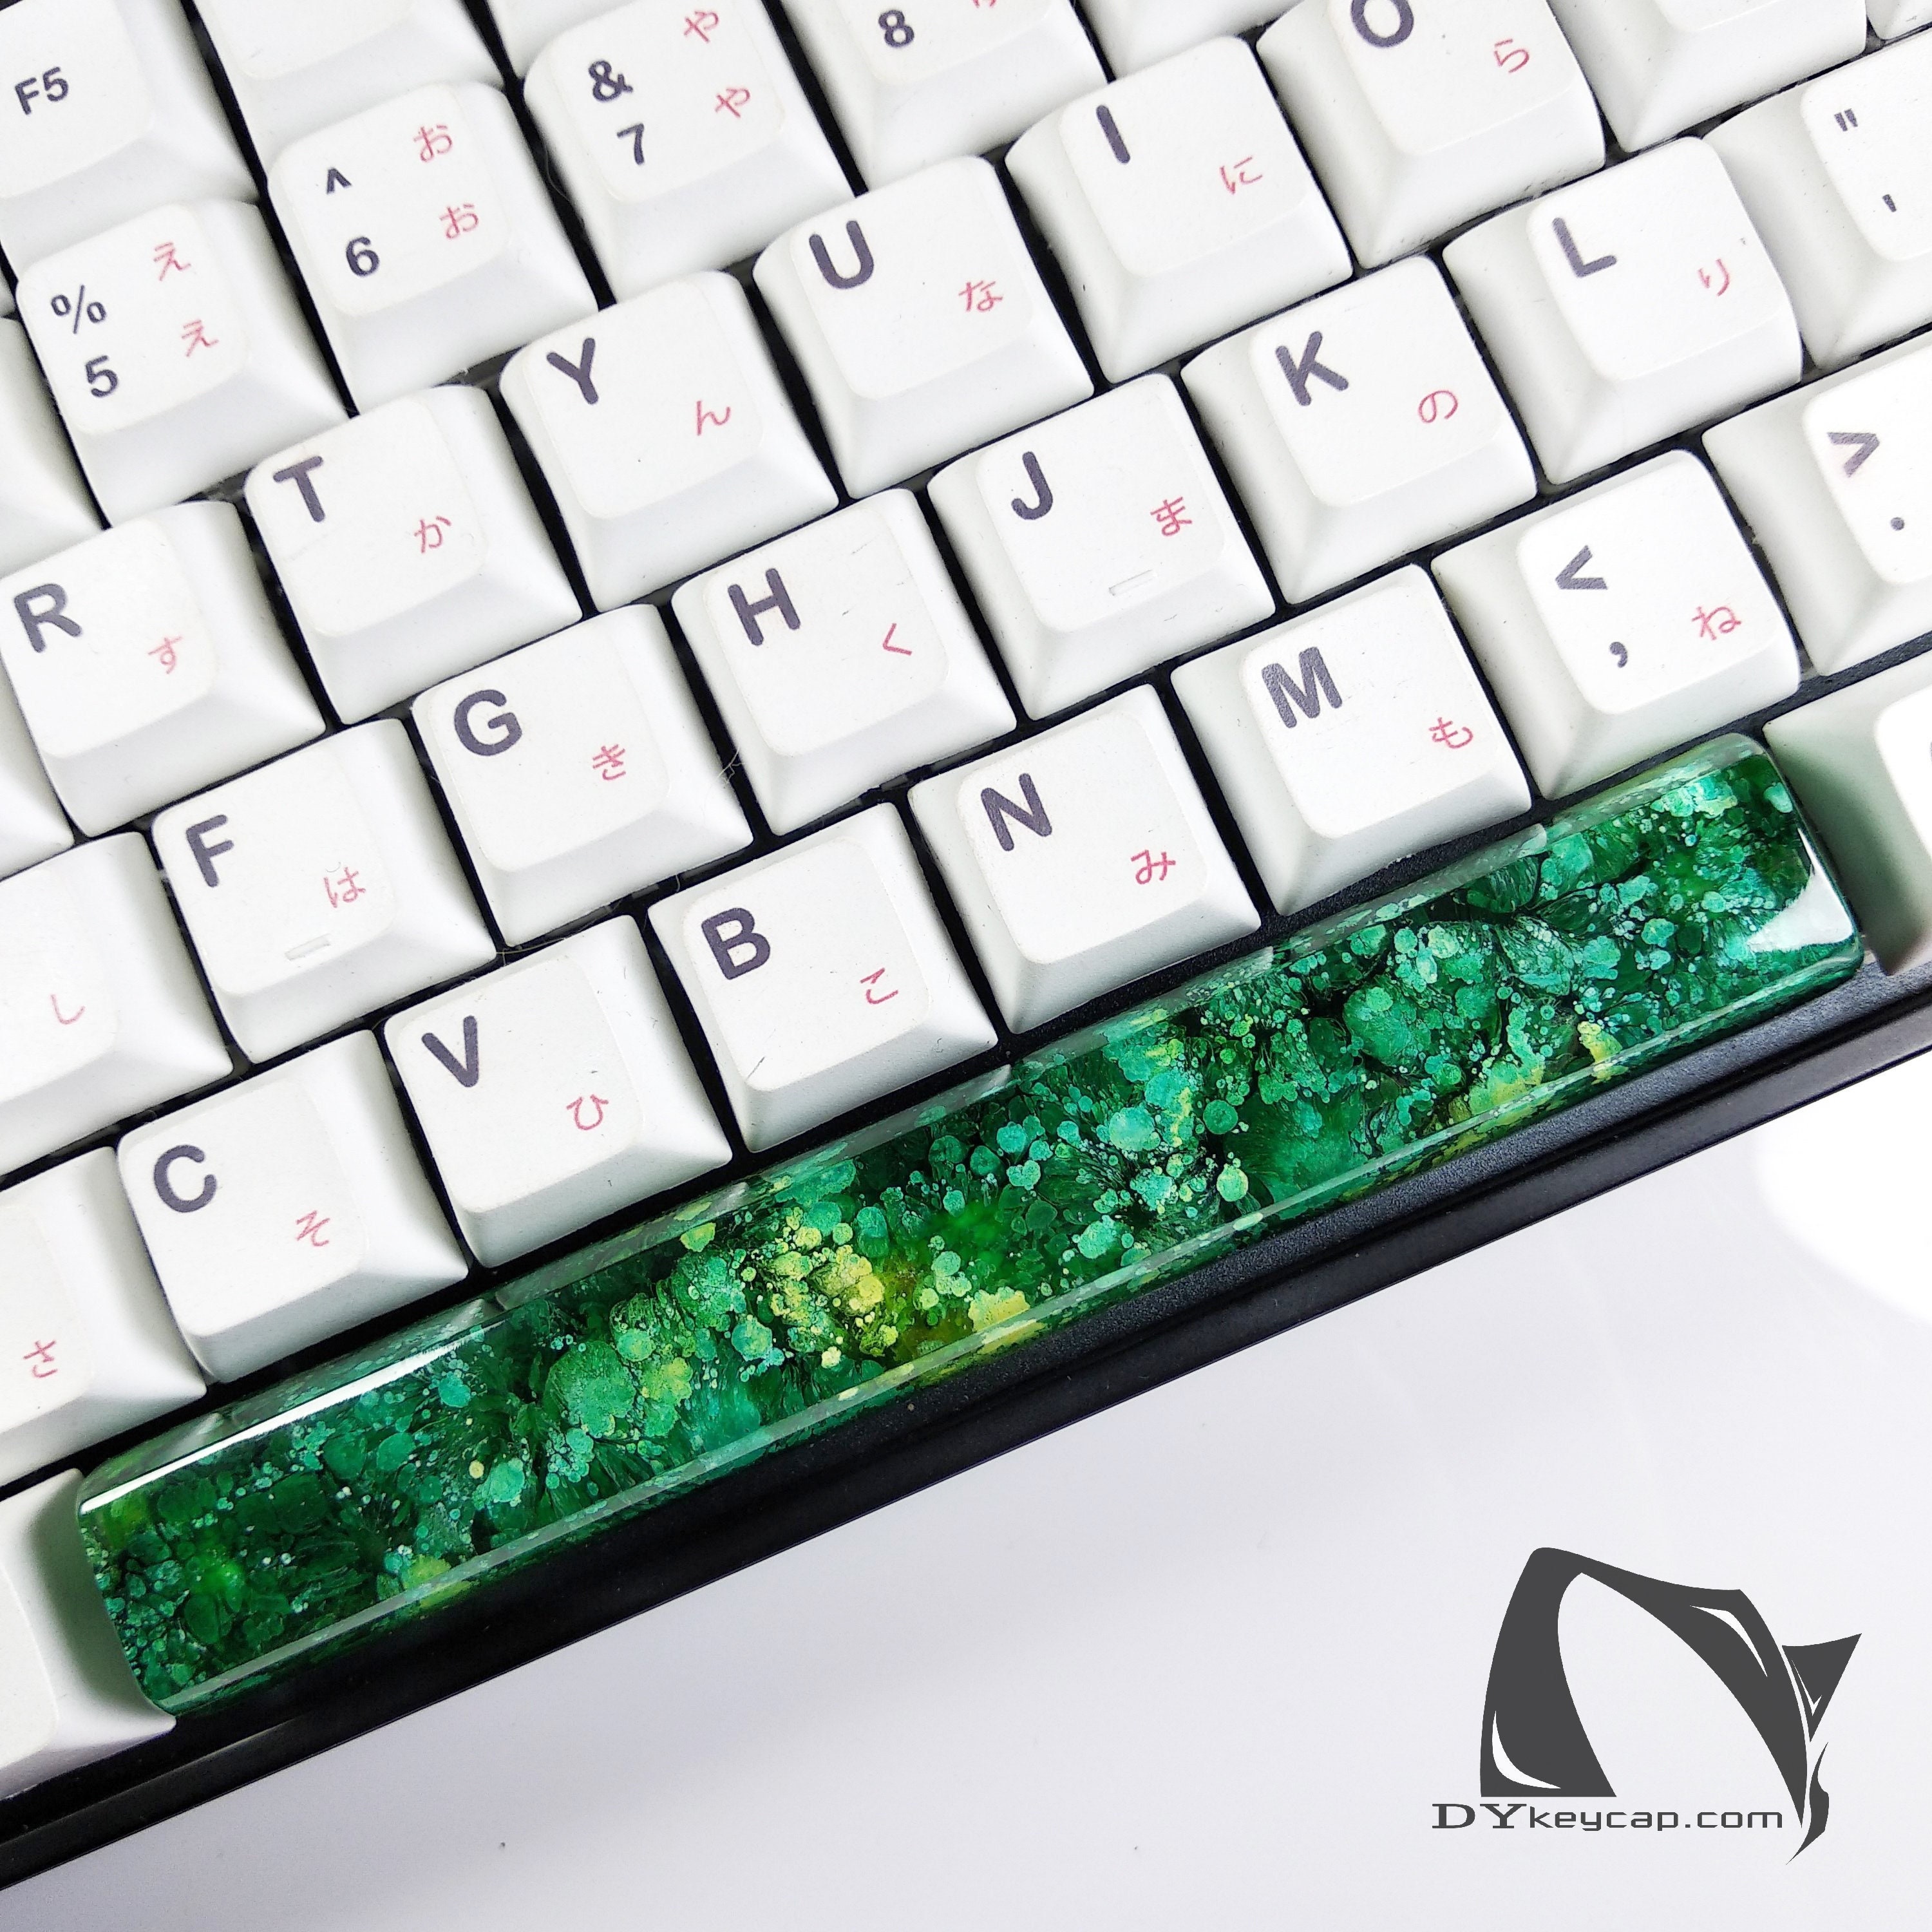 Spacebar Artisan Keycaps, Green color, key cap artisan, spacebar